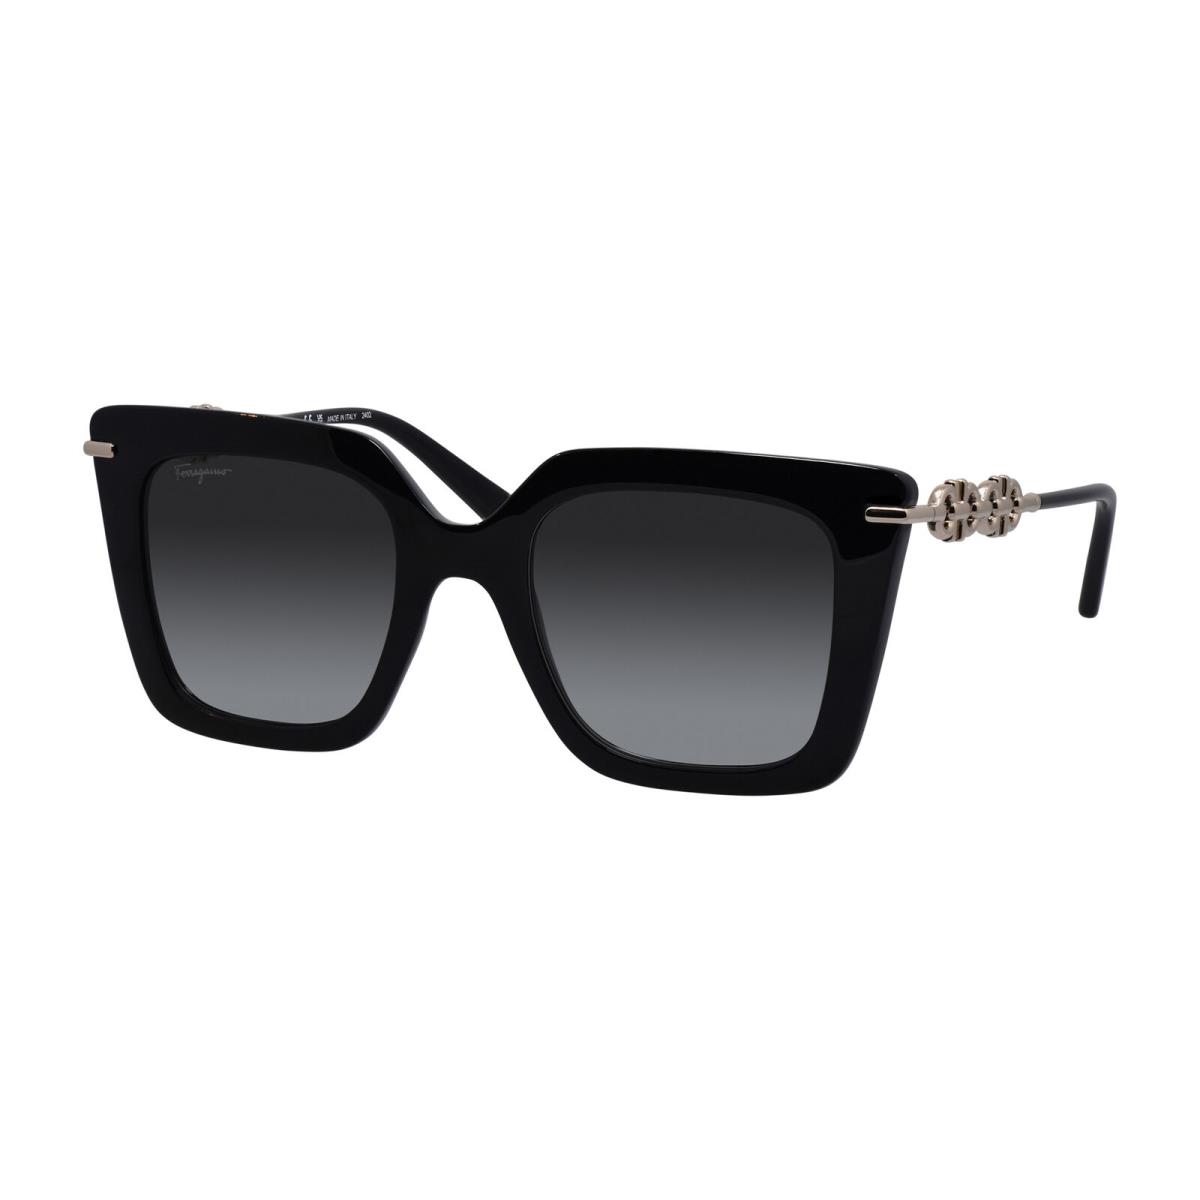 Salvatore Ferragamo SF 1041S 001 Black Plastic Sunglasses Grey Gradient Lens